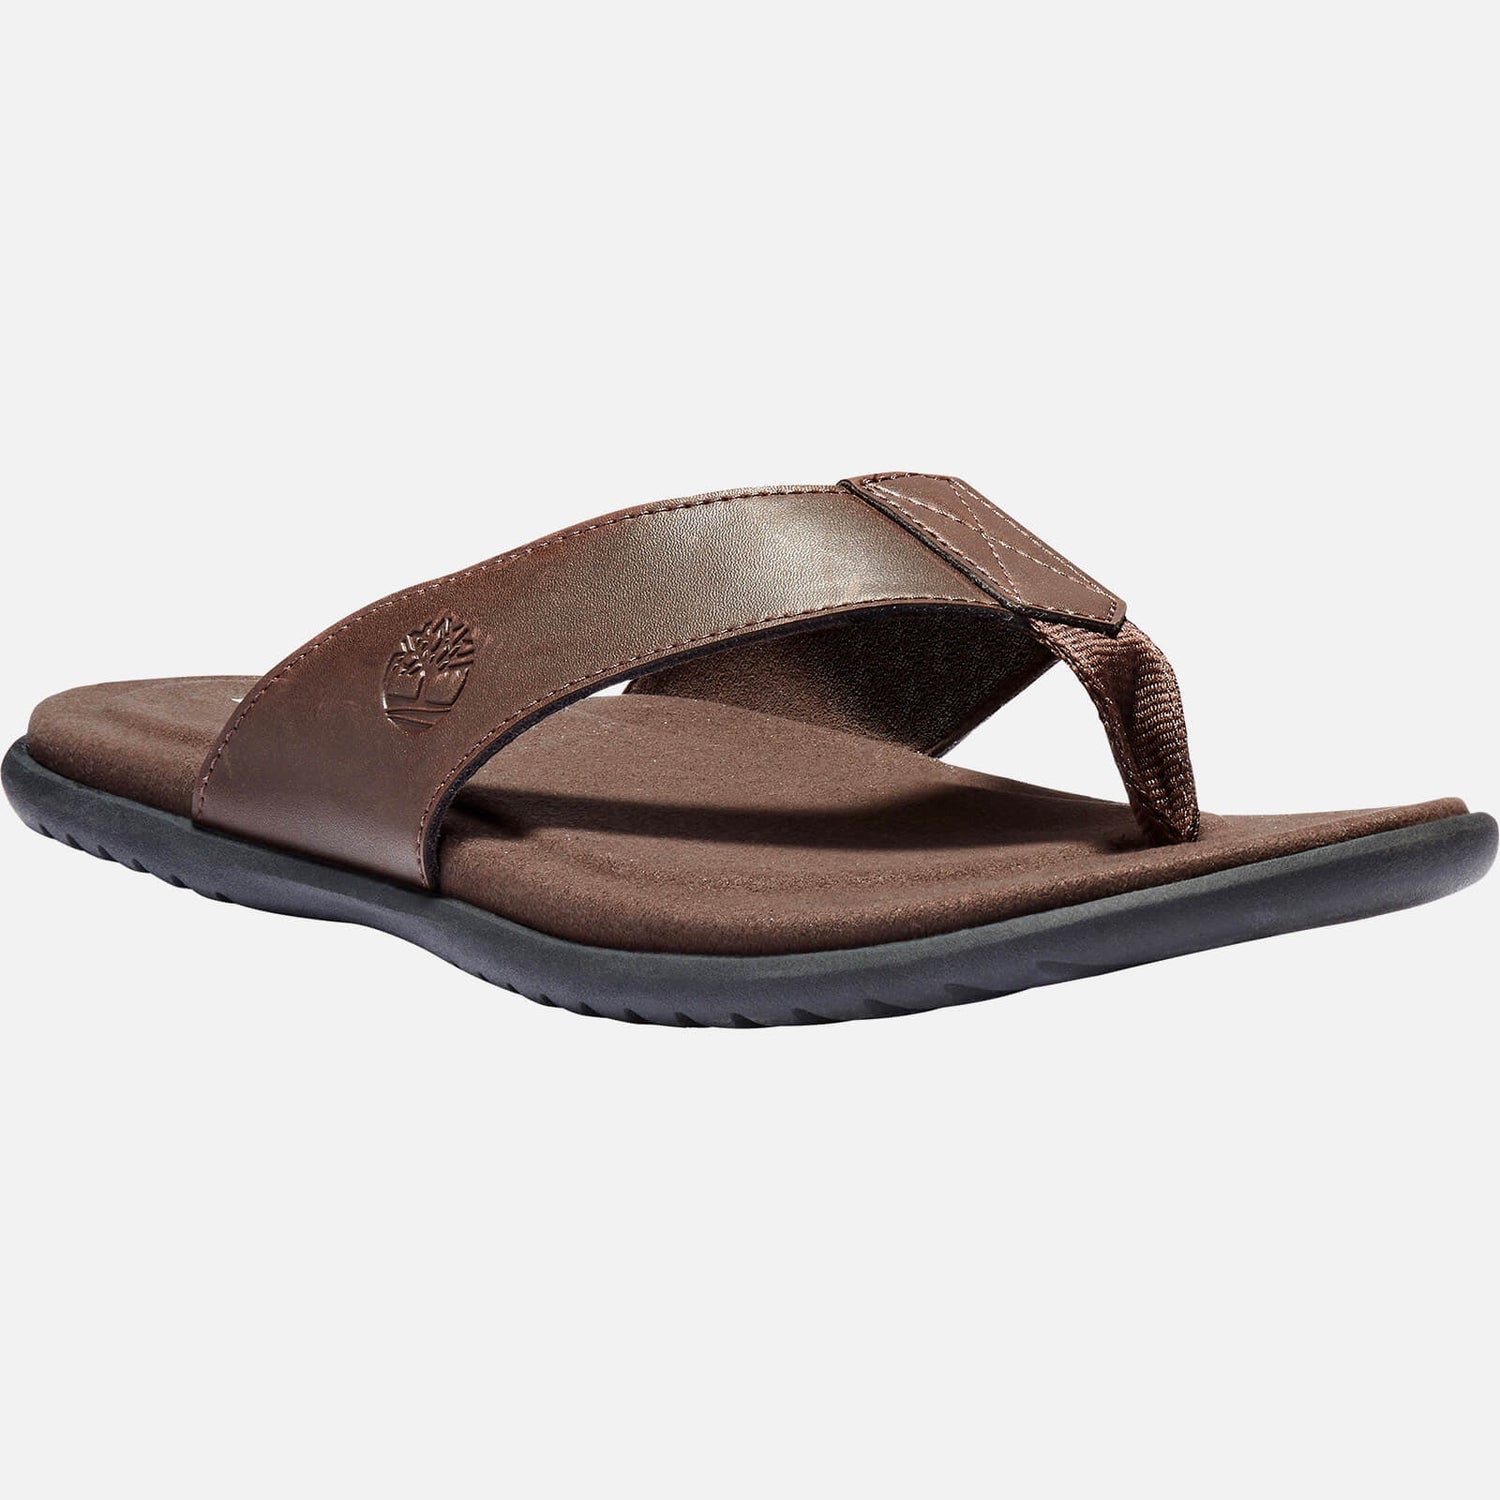 Timberland Men's Kesler Cove Leather Toe Post Sandals - Dark Brown